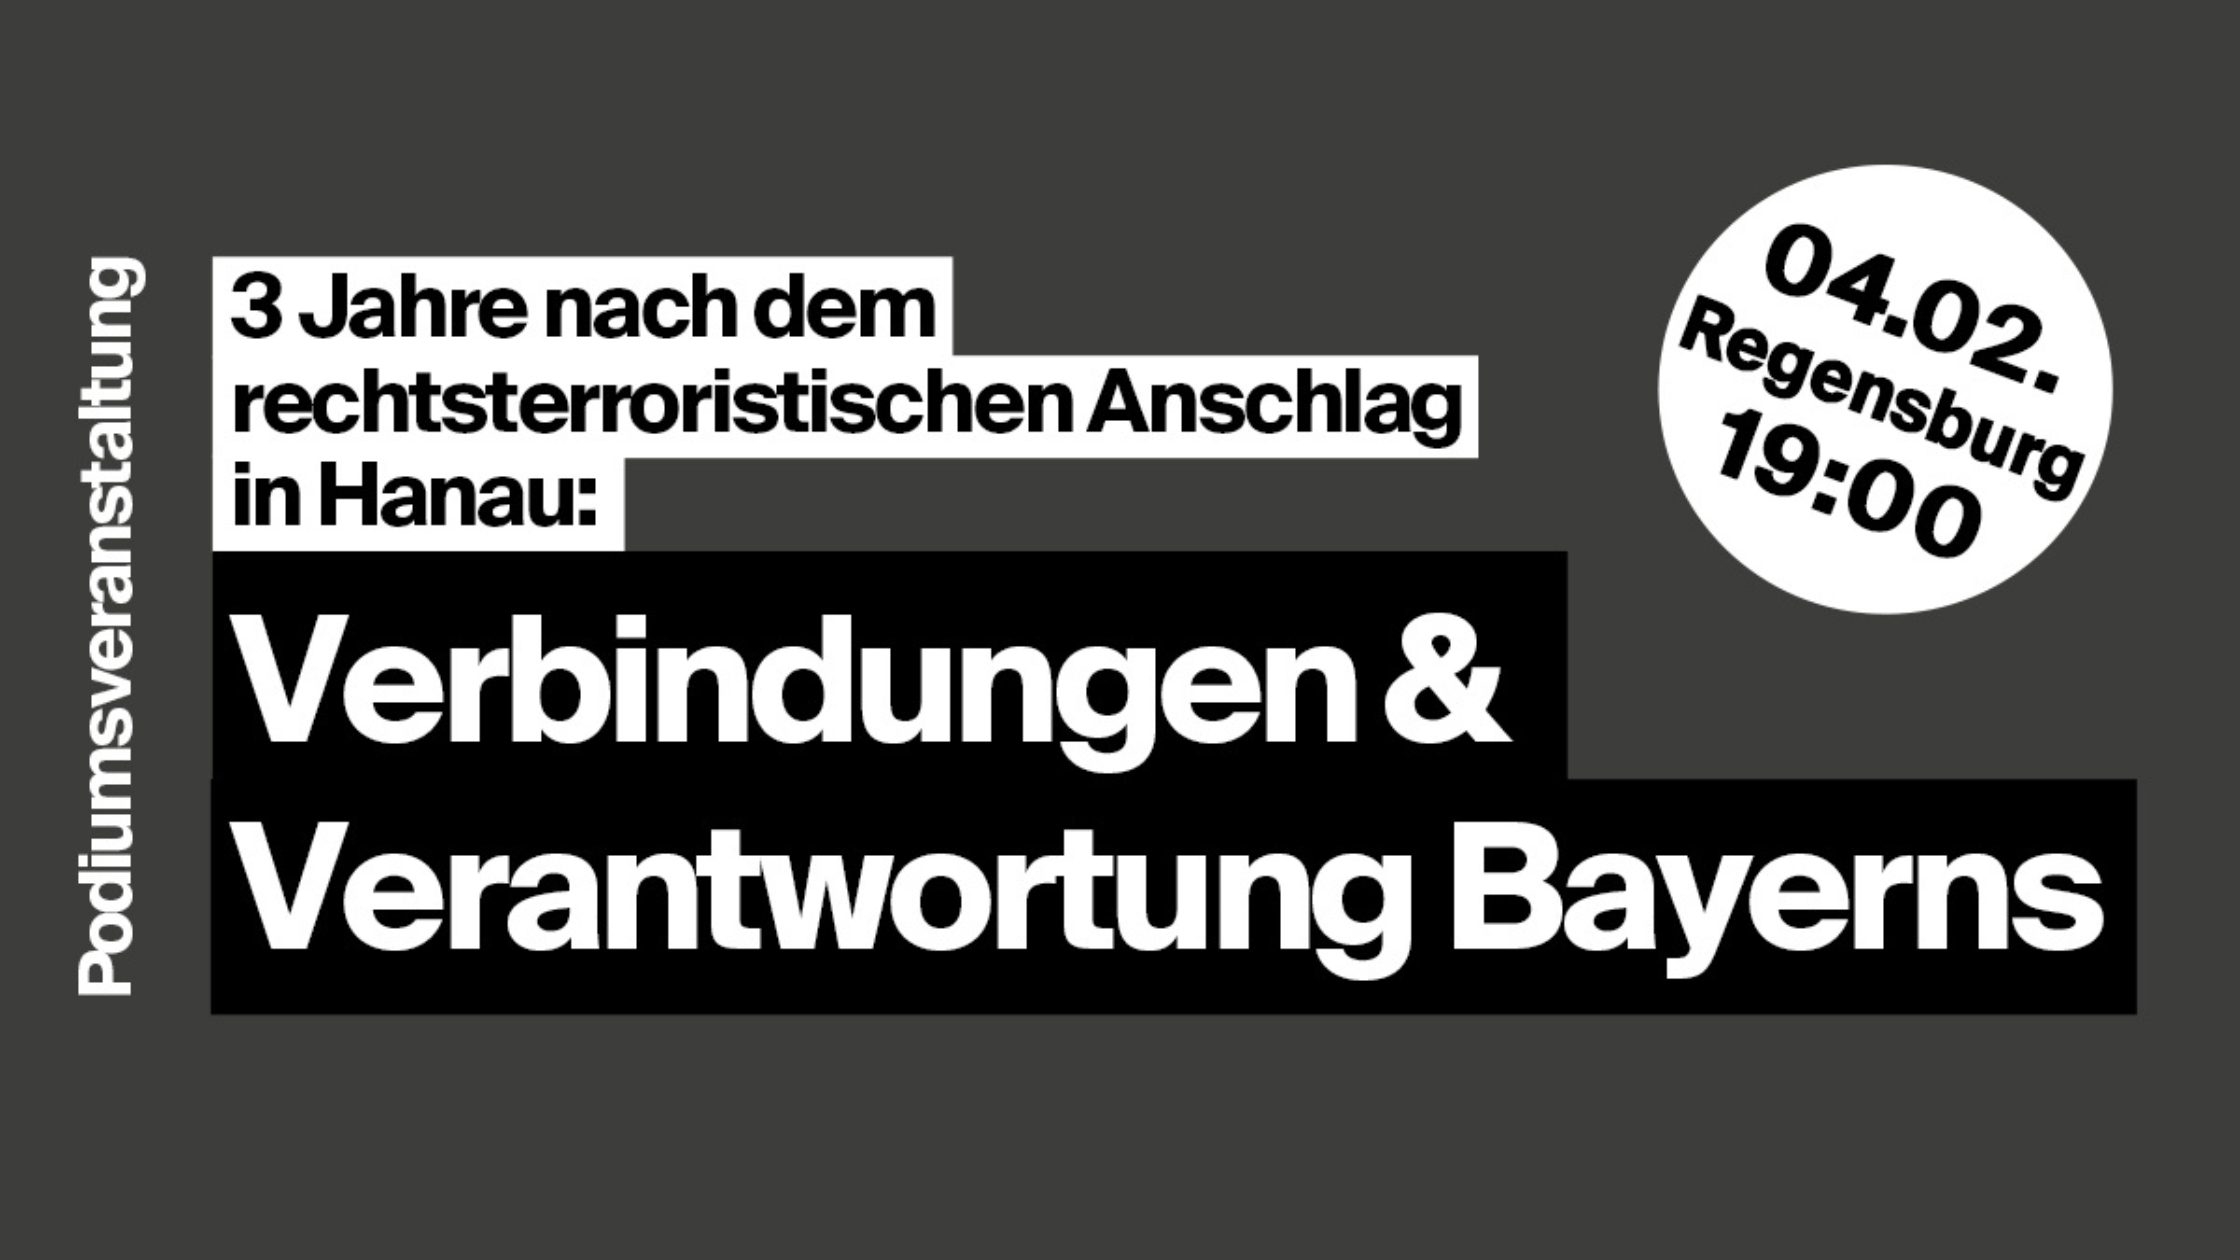 Sharepic: Podiumsdiskussion: "3 Jahre nach dem rechtsterroristischen Anschlag in Hanau: Verbindungen & Verantwortung Bayerns", 04.02., 19:00 Uhr, Regensburg